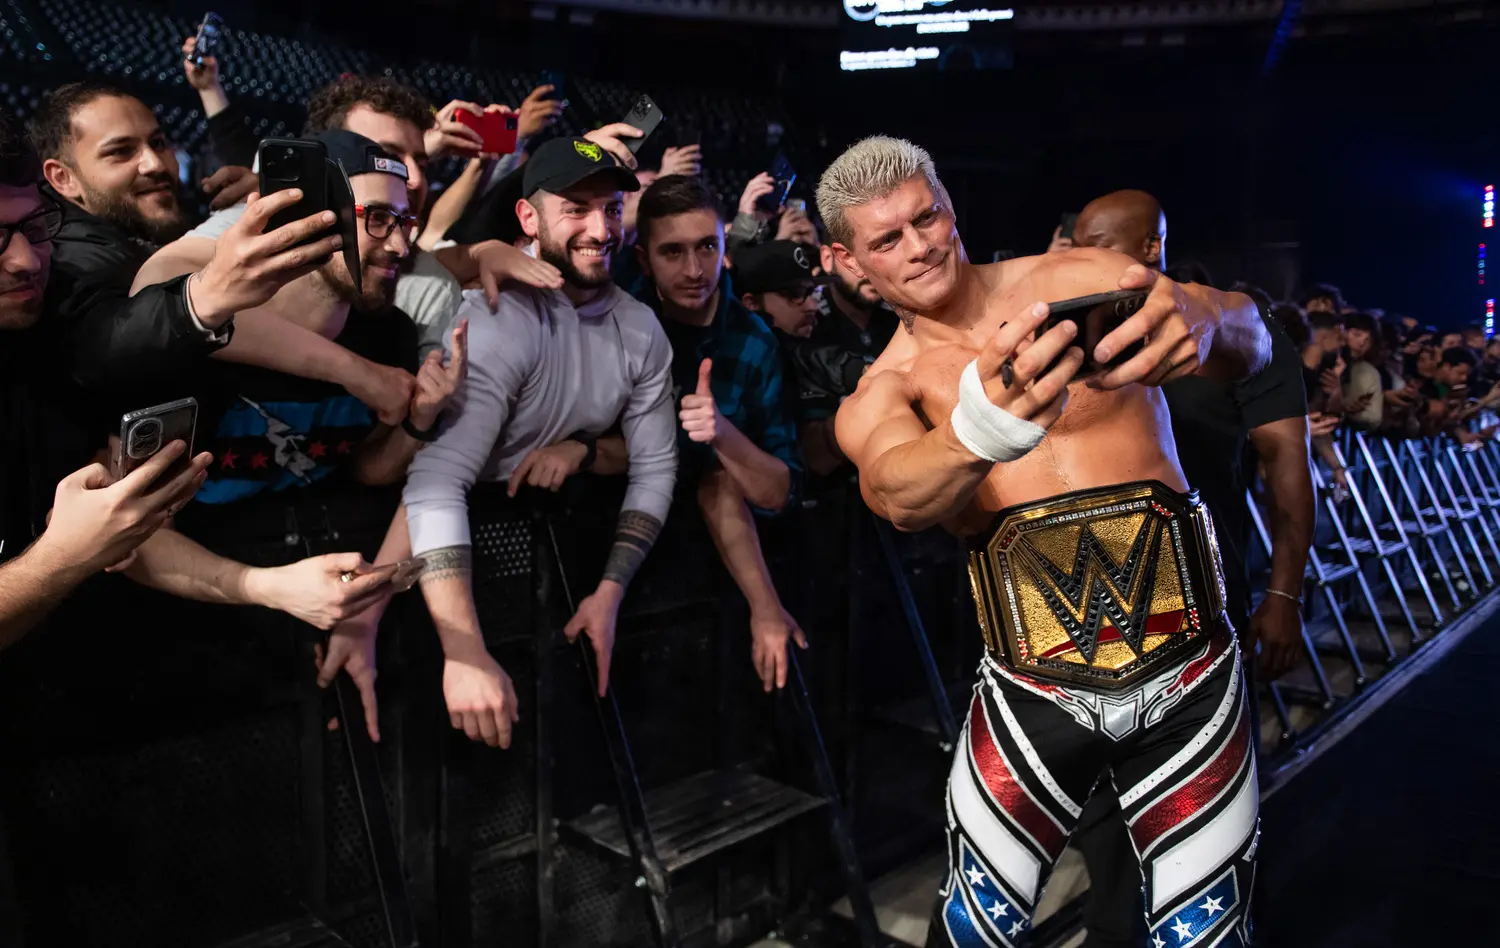 Cresce l’attesa per l’evento WWE a Bologna: spoilerati i primi wrestler presenti, quanti grandi nomi!